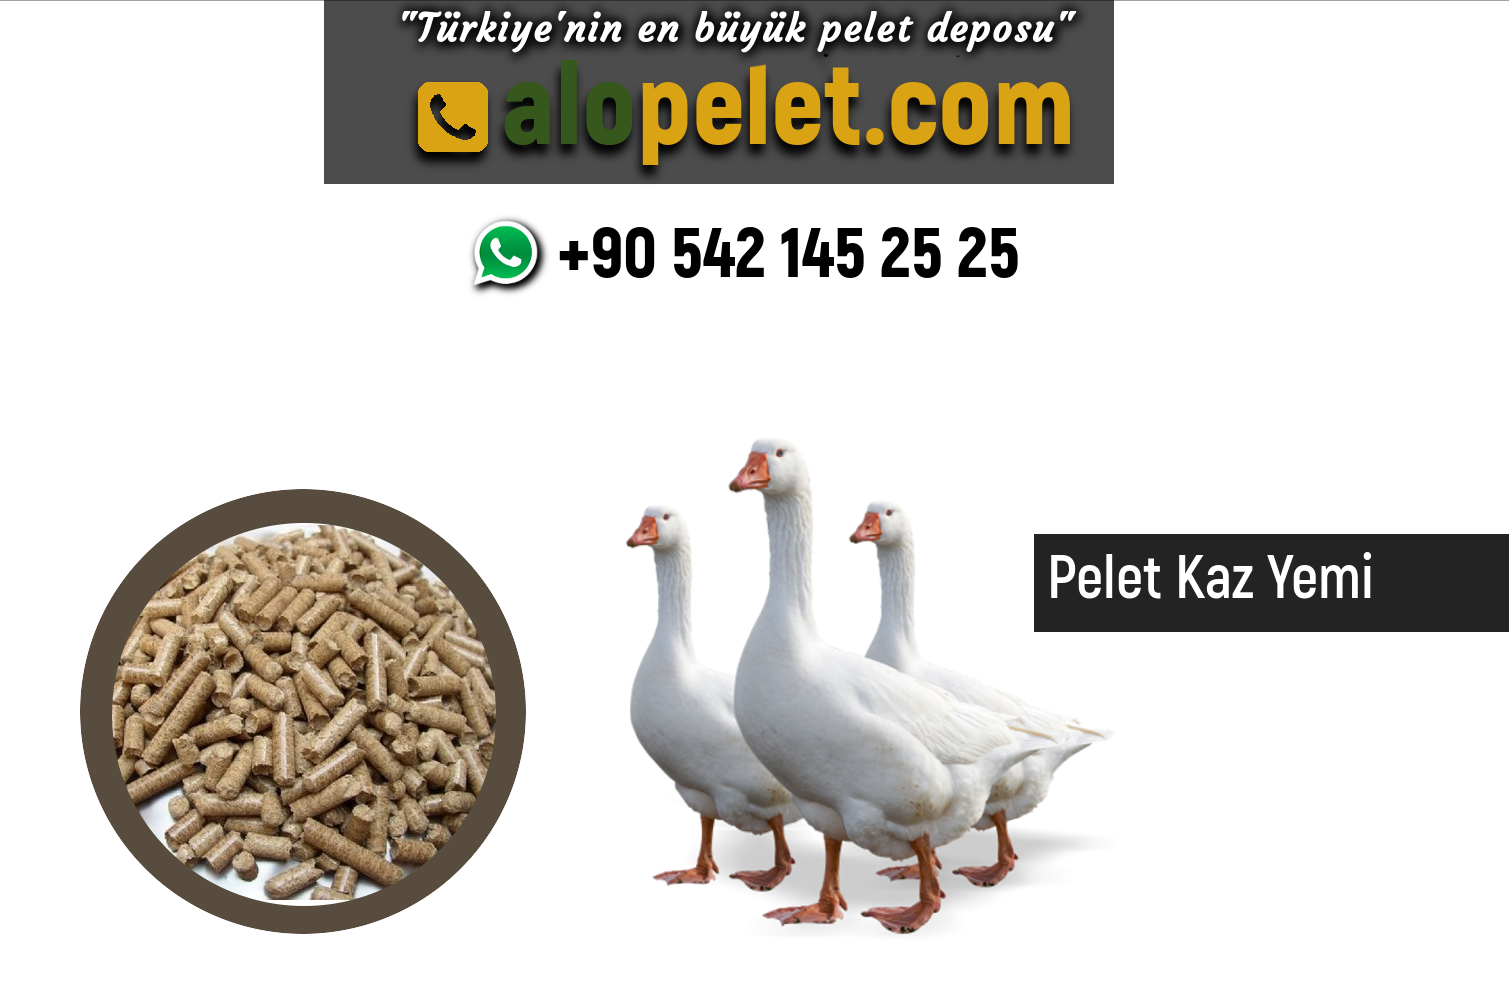 Pelet Kaz Yemi